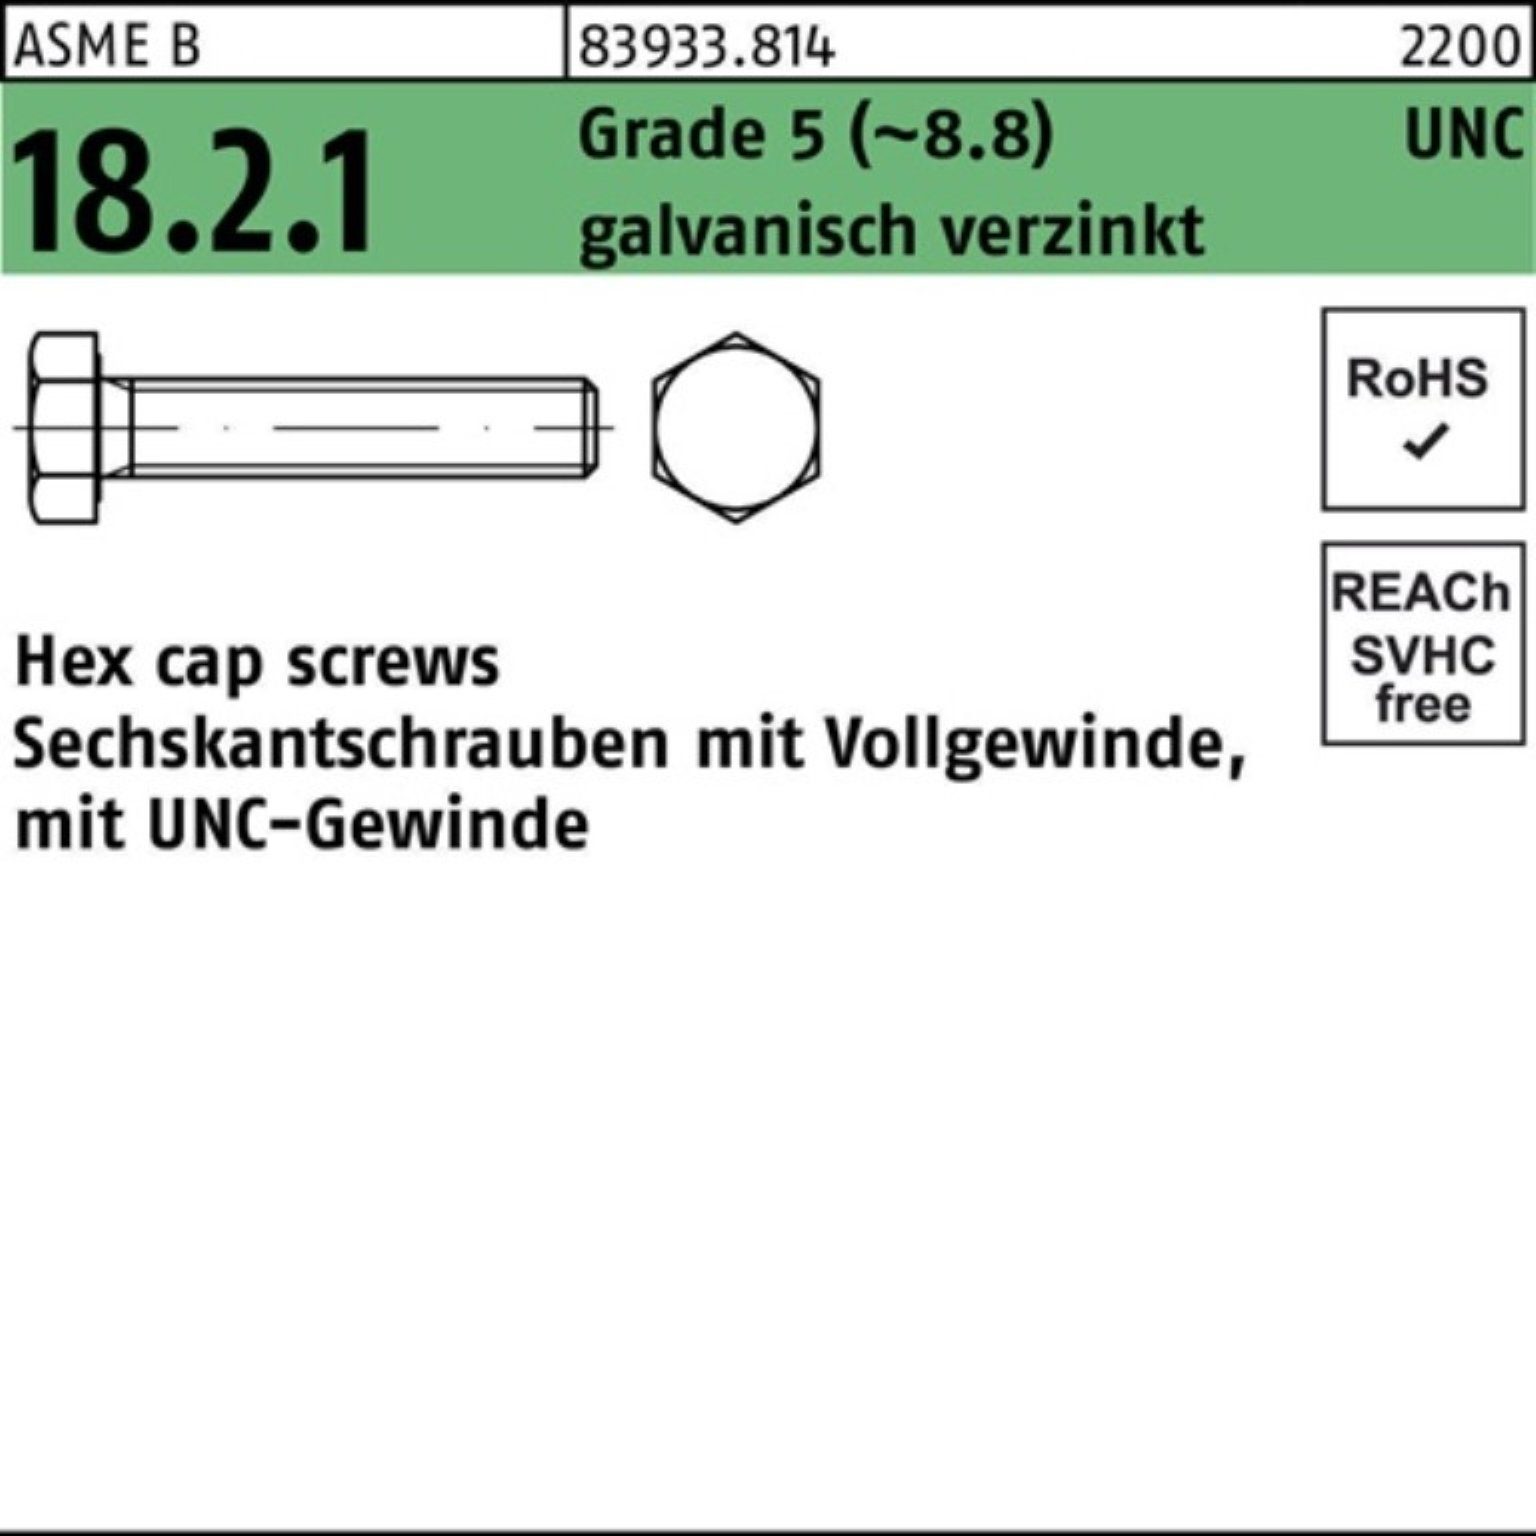 Reyher Sechskantschraube 100er Pack Sechskantschraube R 83933 UNC VG 5/16x5/8 Grade 5 (8.8) ga